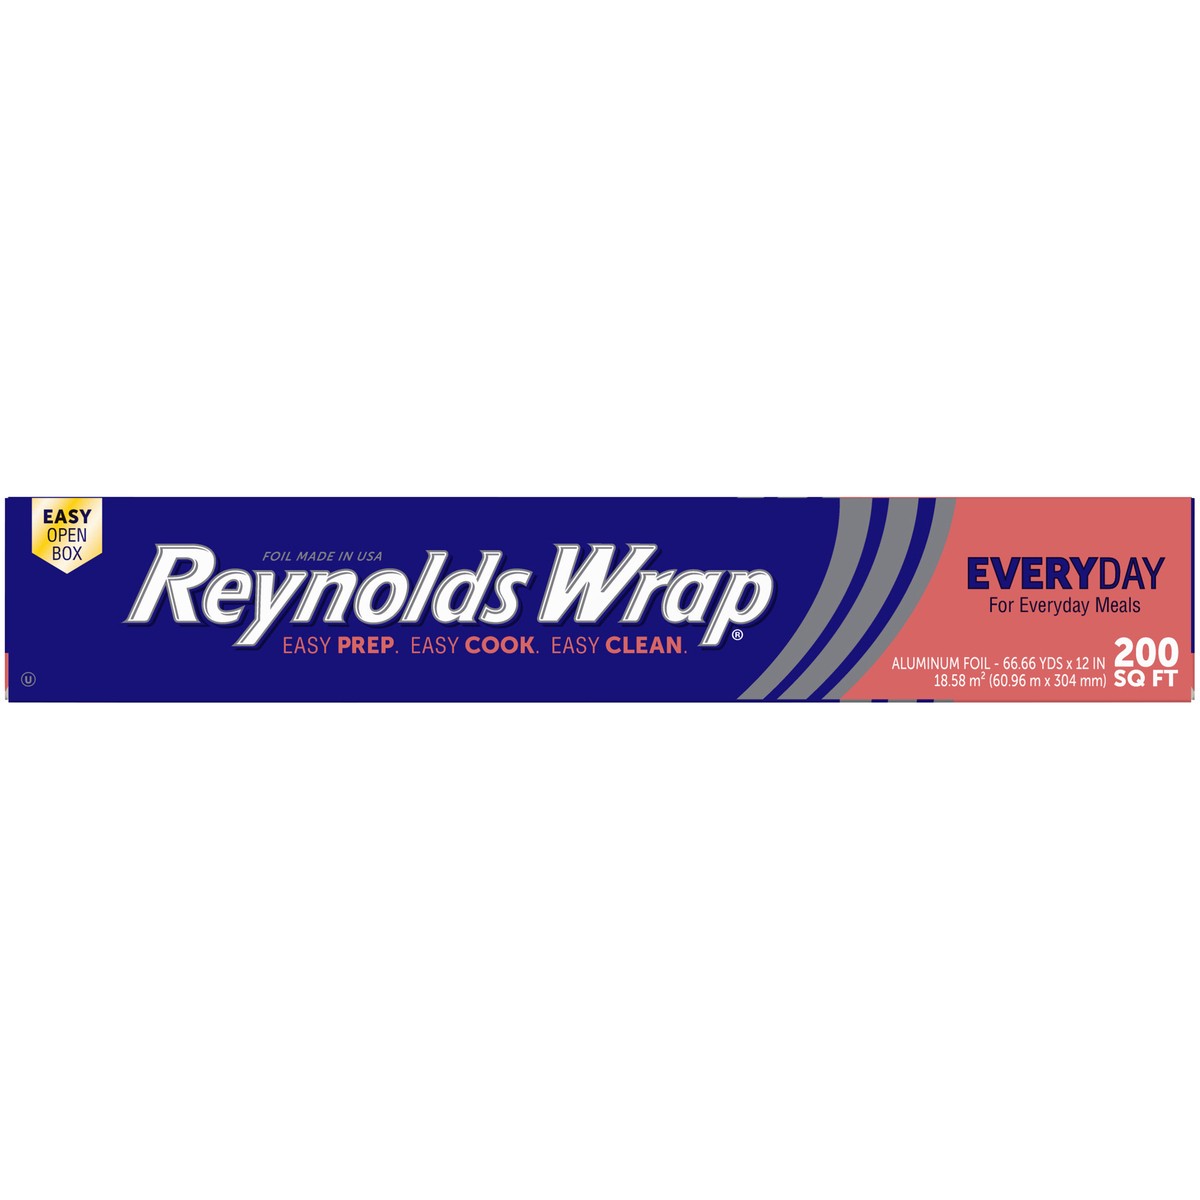 slide 7 of 12, Reynolds Wrap Everyday Aluminum Foil, 200 ft